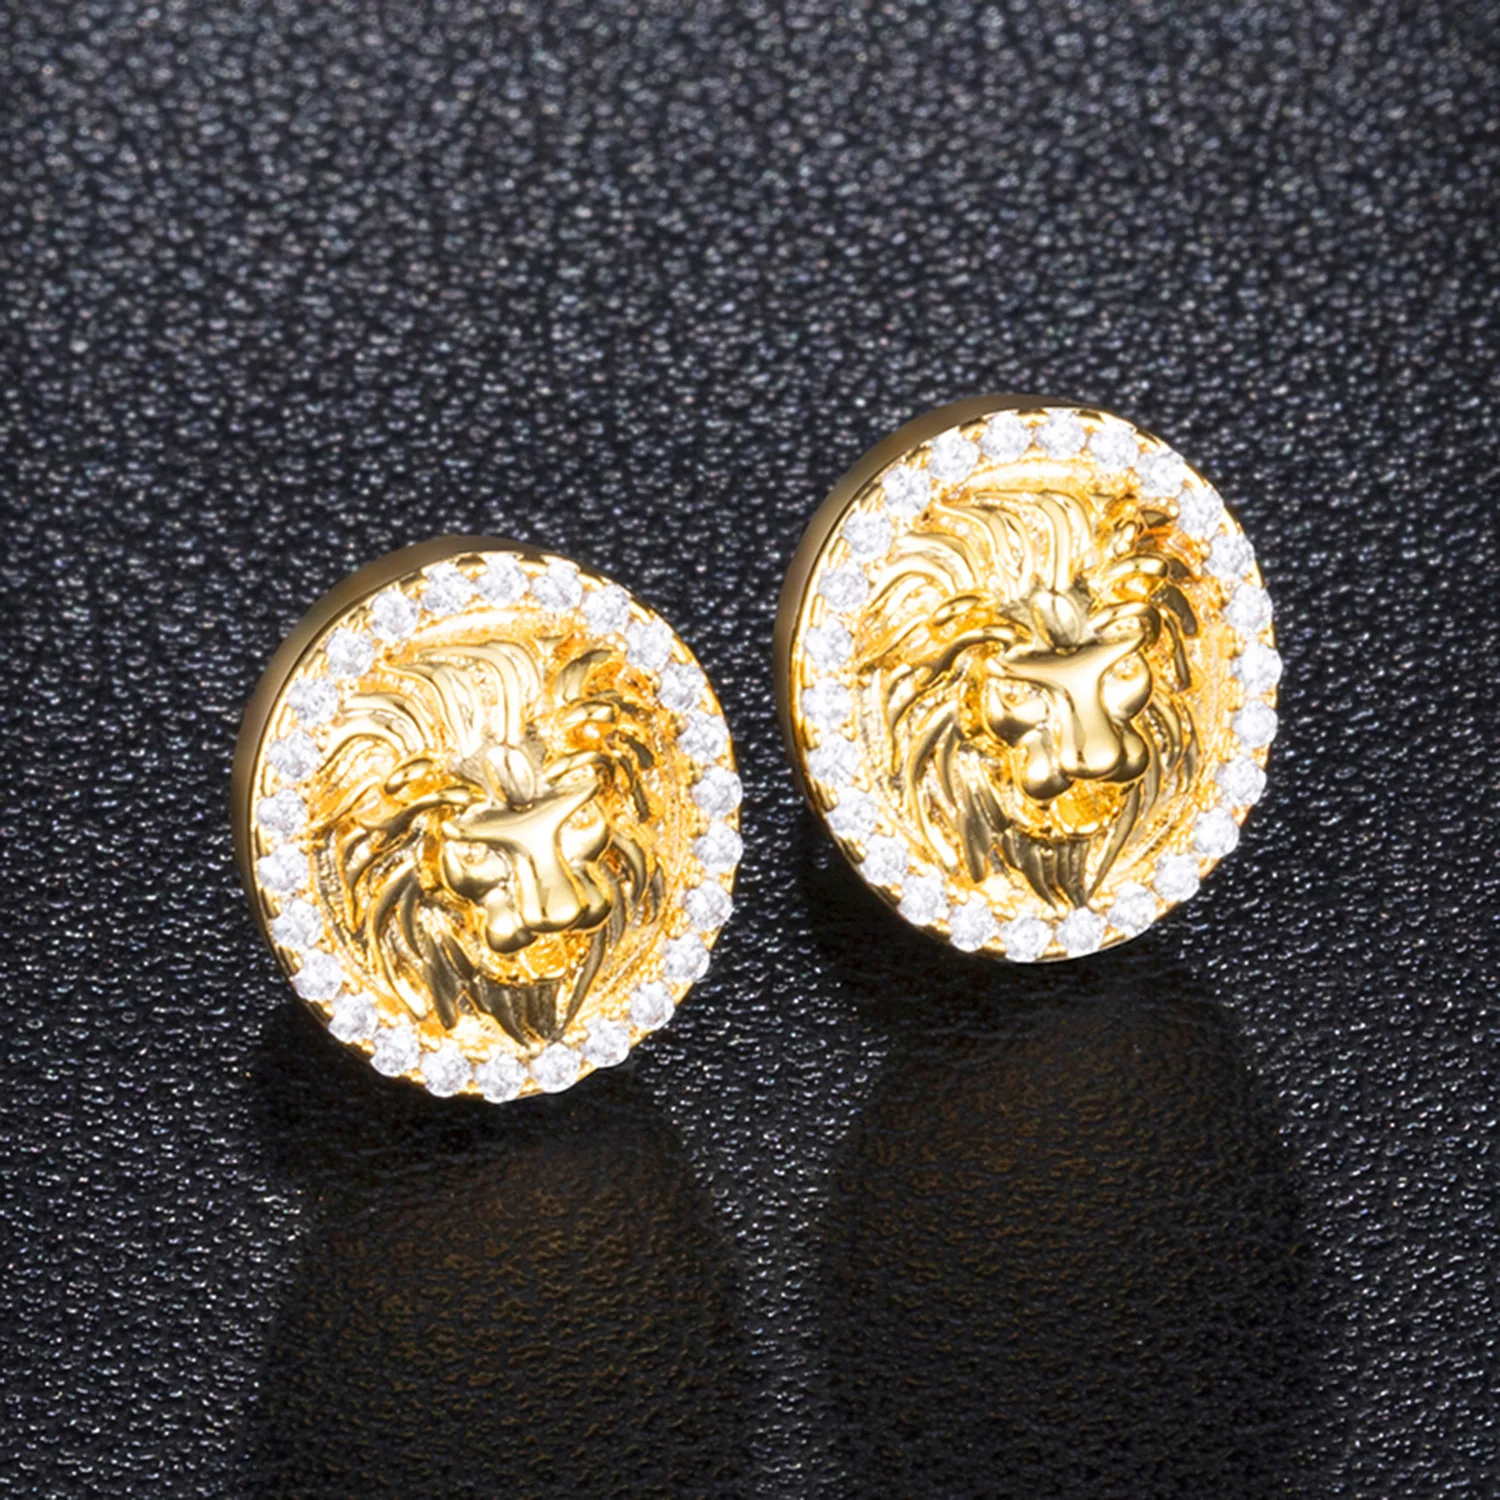 

Men's Lion Head Stud Earrings Gold Plated Iced Out Rhinestone Earrings Unisex Hip Hop Jewelry Party Zircon Earrings Gifts